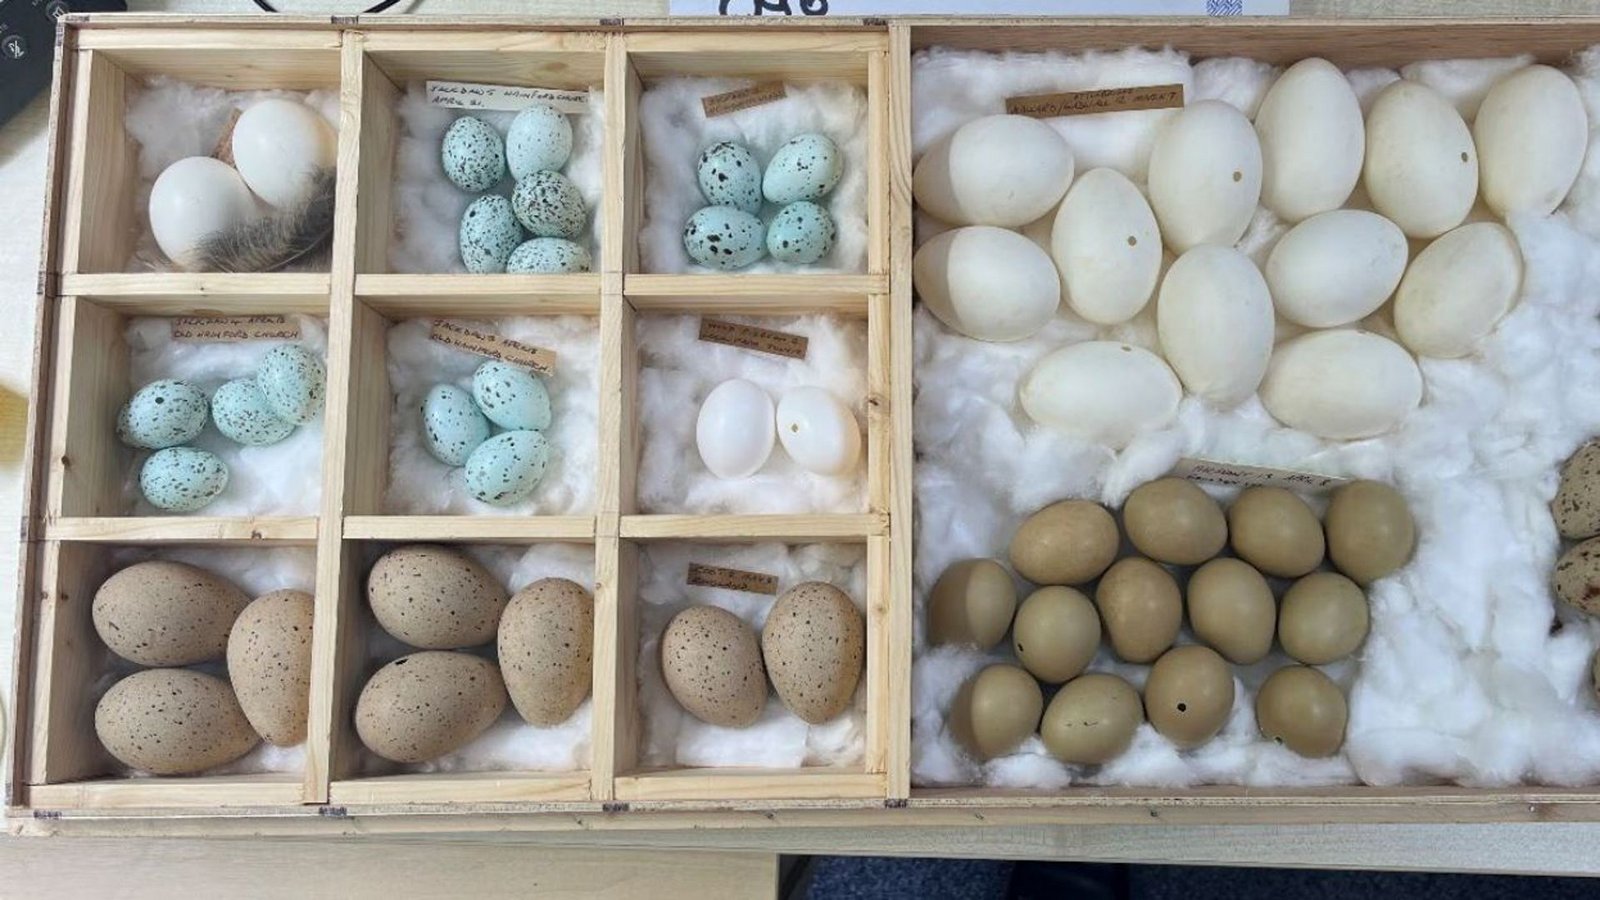 Der 71-Jährige musste bereits in der Vergangenheit zweimal in Haft, weil mehrere Tausend Eier bei ihm gefunden worden waren. (Symbolbild)Foto: dpa/Norfolk Police